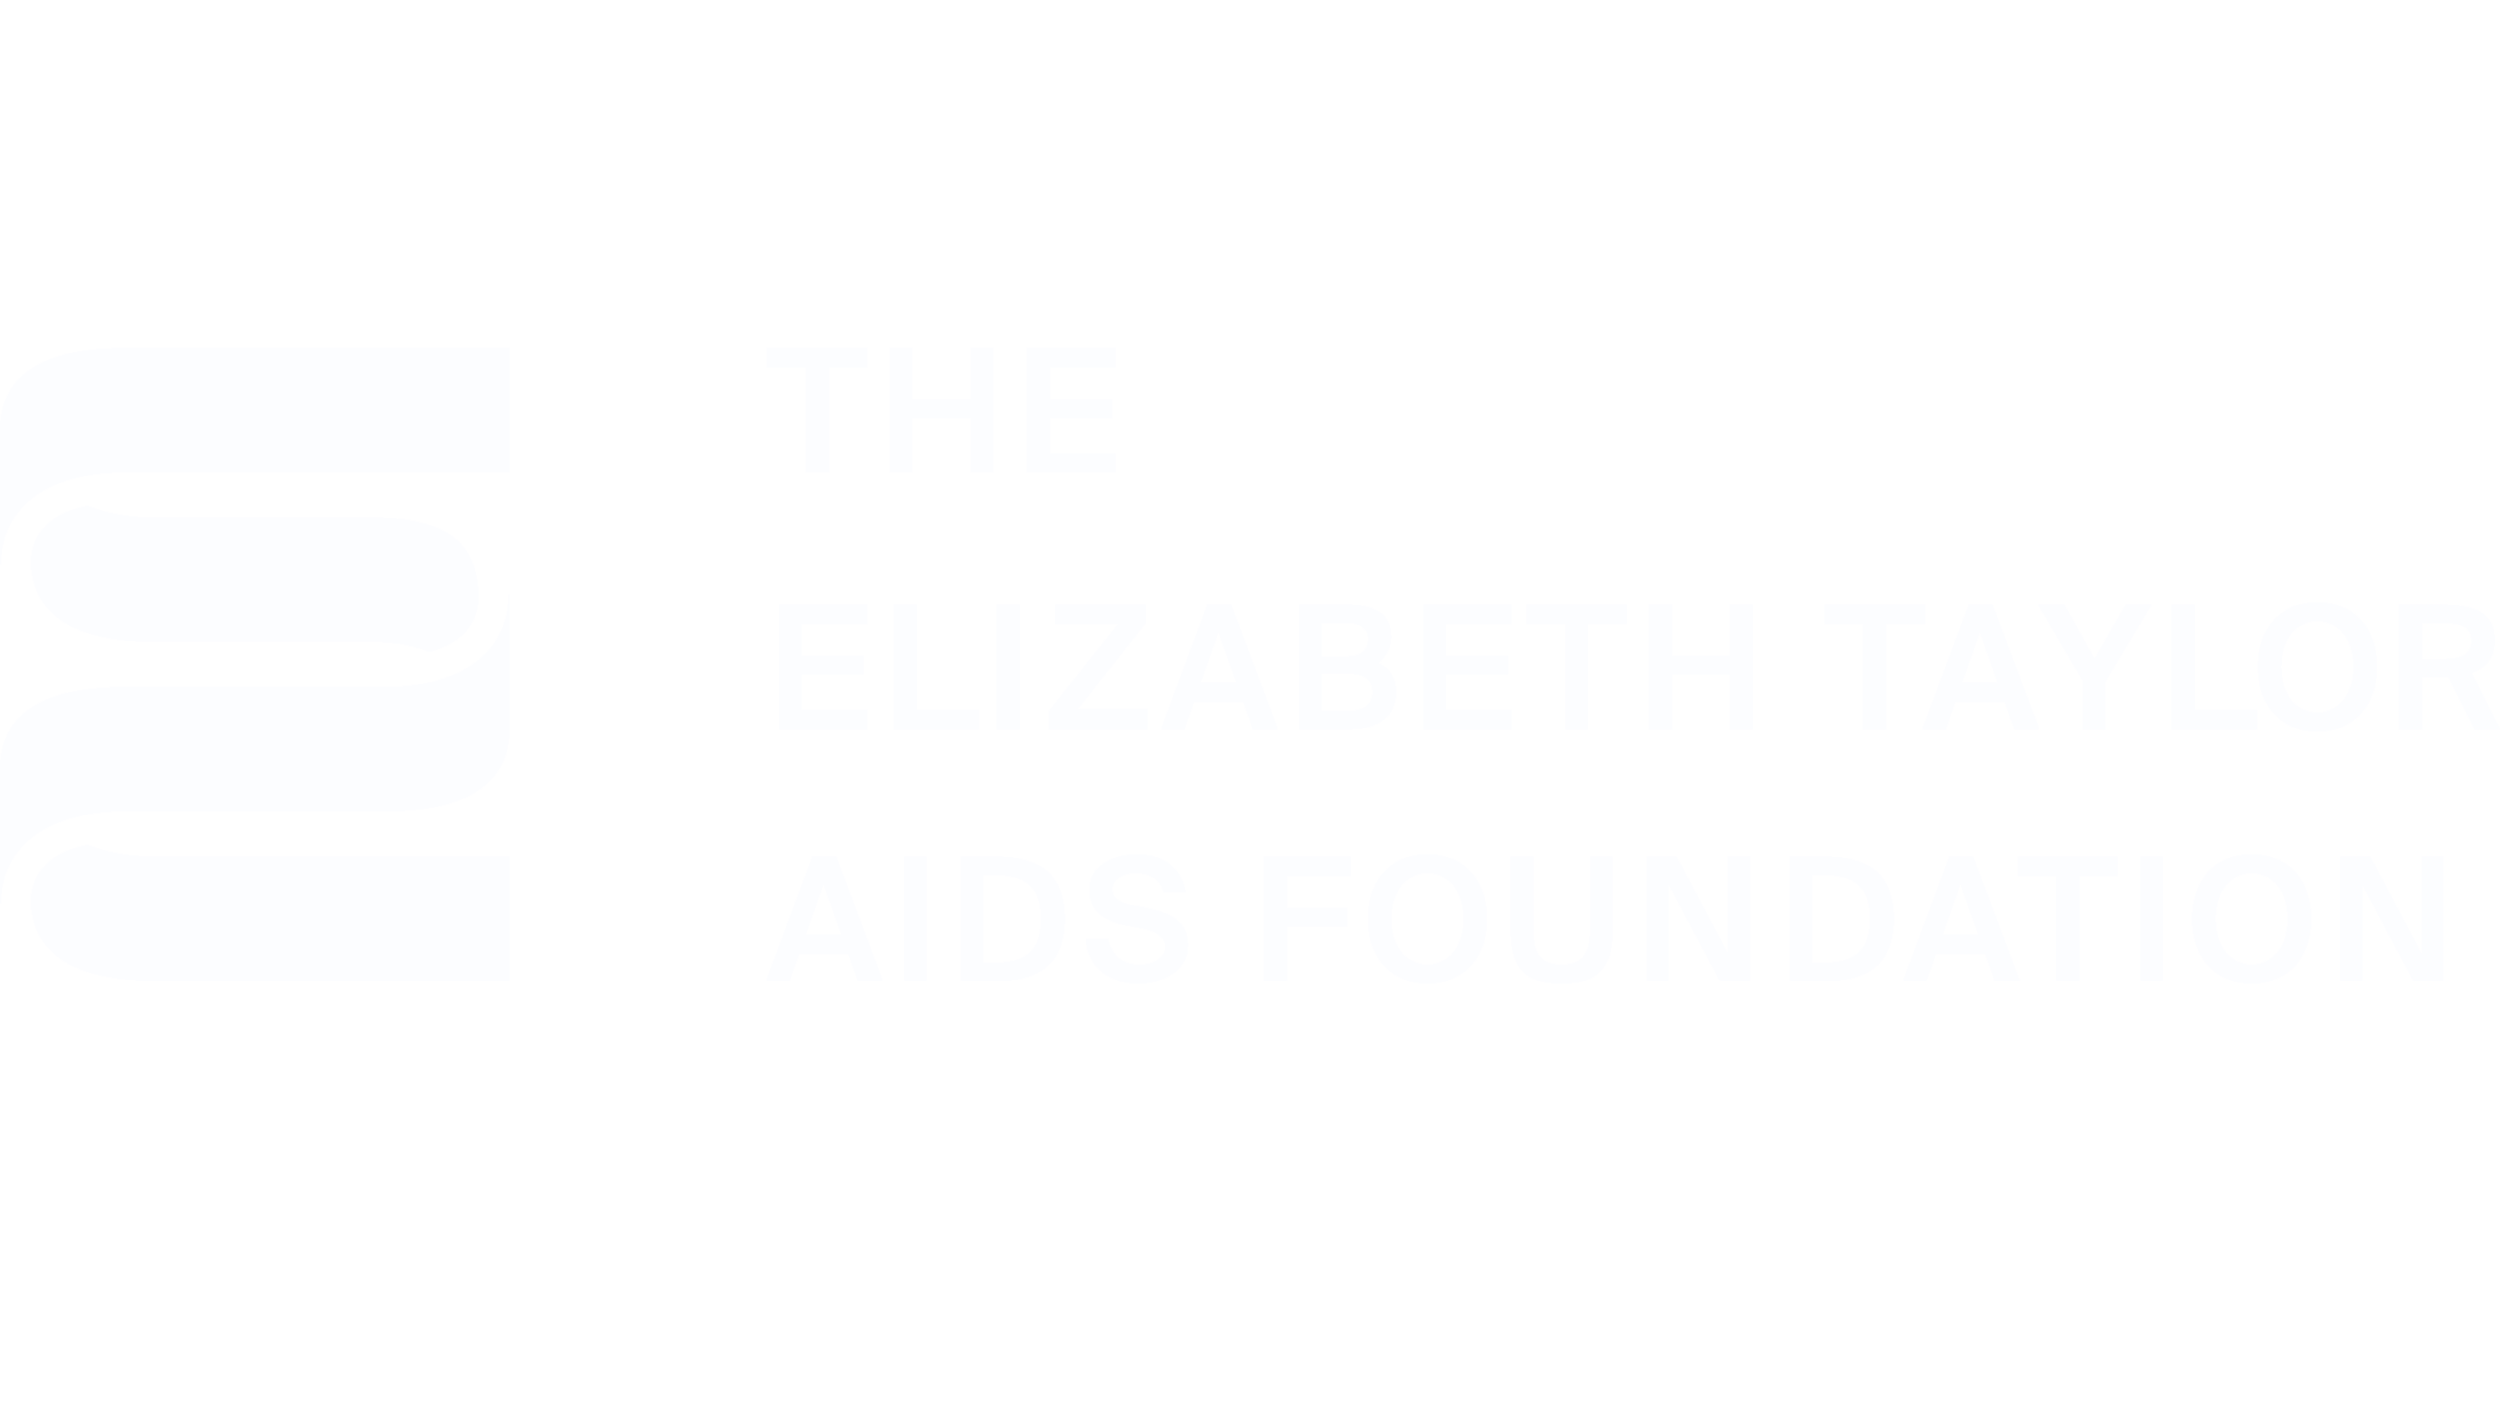 The Elizabeth Taylor Aids Foundation logo